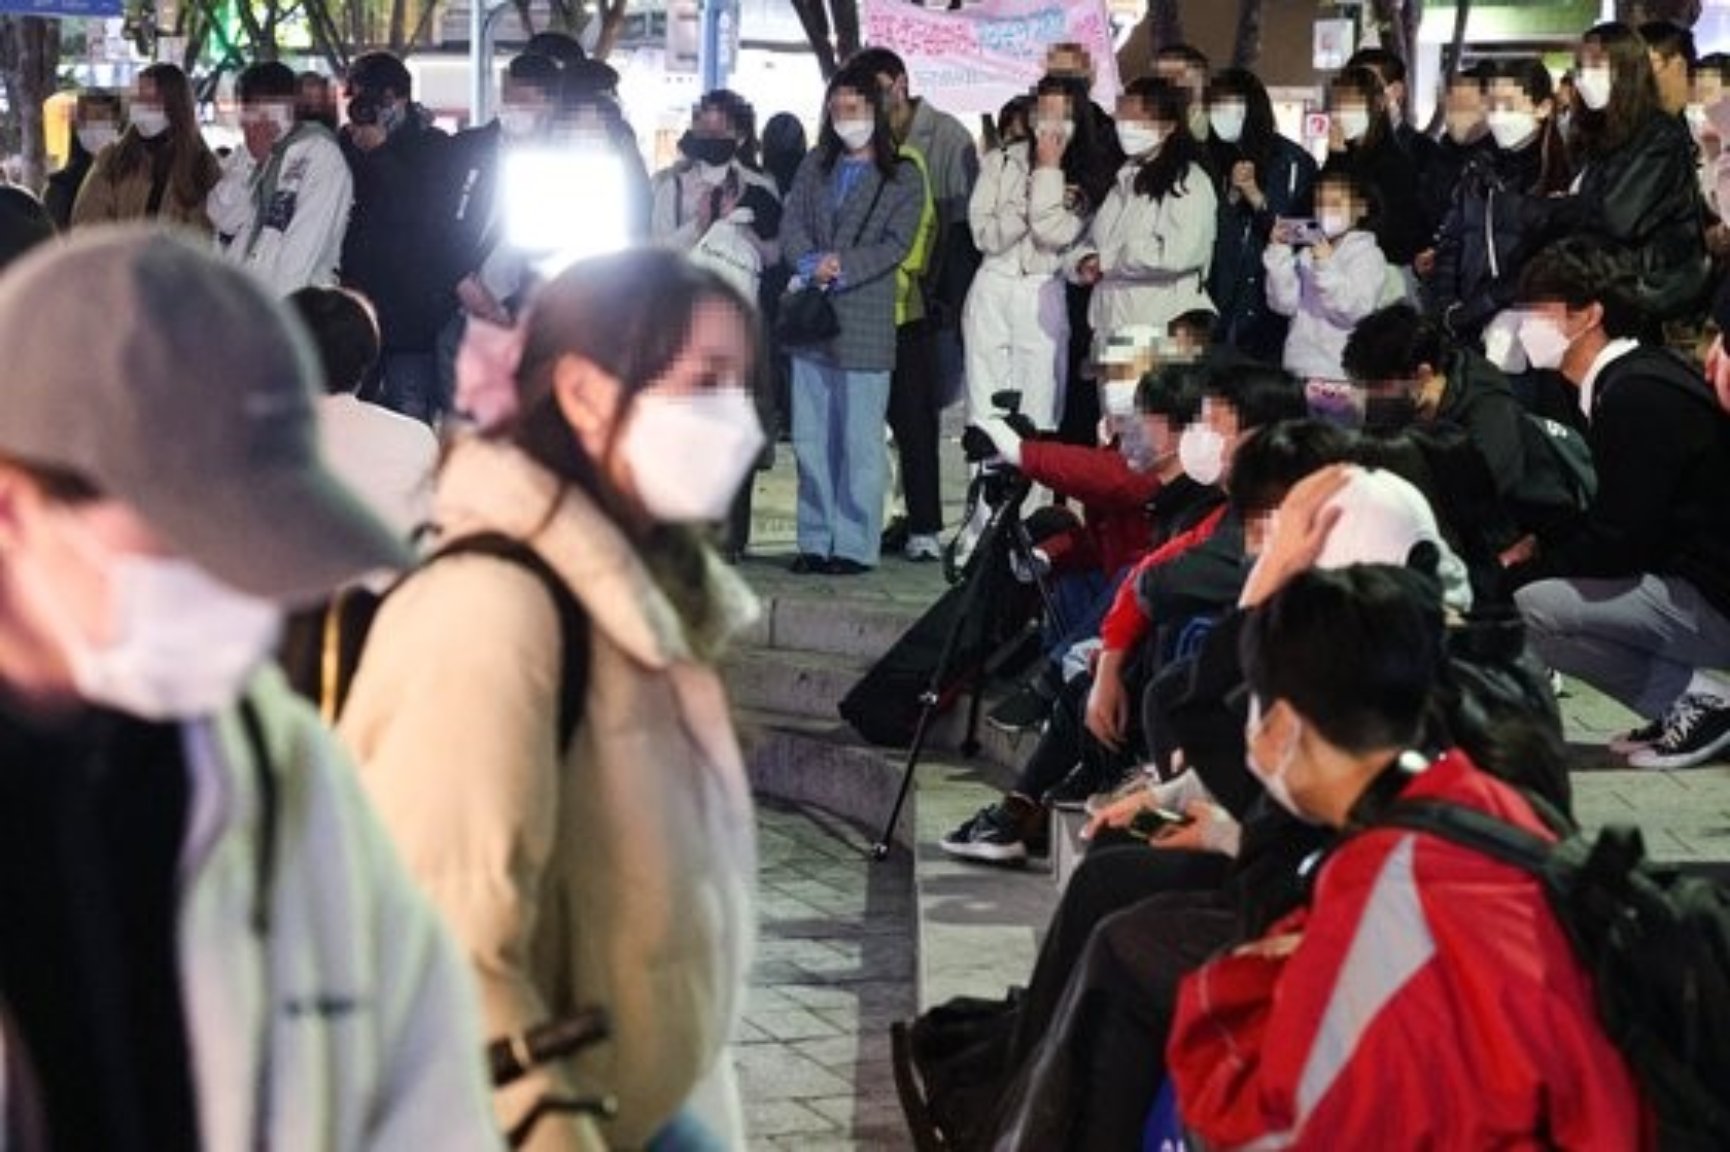 4月14日晚，市民们正在观看在首尔麻浦区弘益大学青春街举行的街头舞蹈表演。自从4月初韩国政府放宽保持社交距离措施以后，这些表演时隔3年再次出现在街头上。韩国政府决定从下周开始全面解除私人聚会限制和餐厅、咖啡厅营业时间限制等，取消大部分保持社交距离的防疫措施。【韩联社】